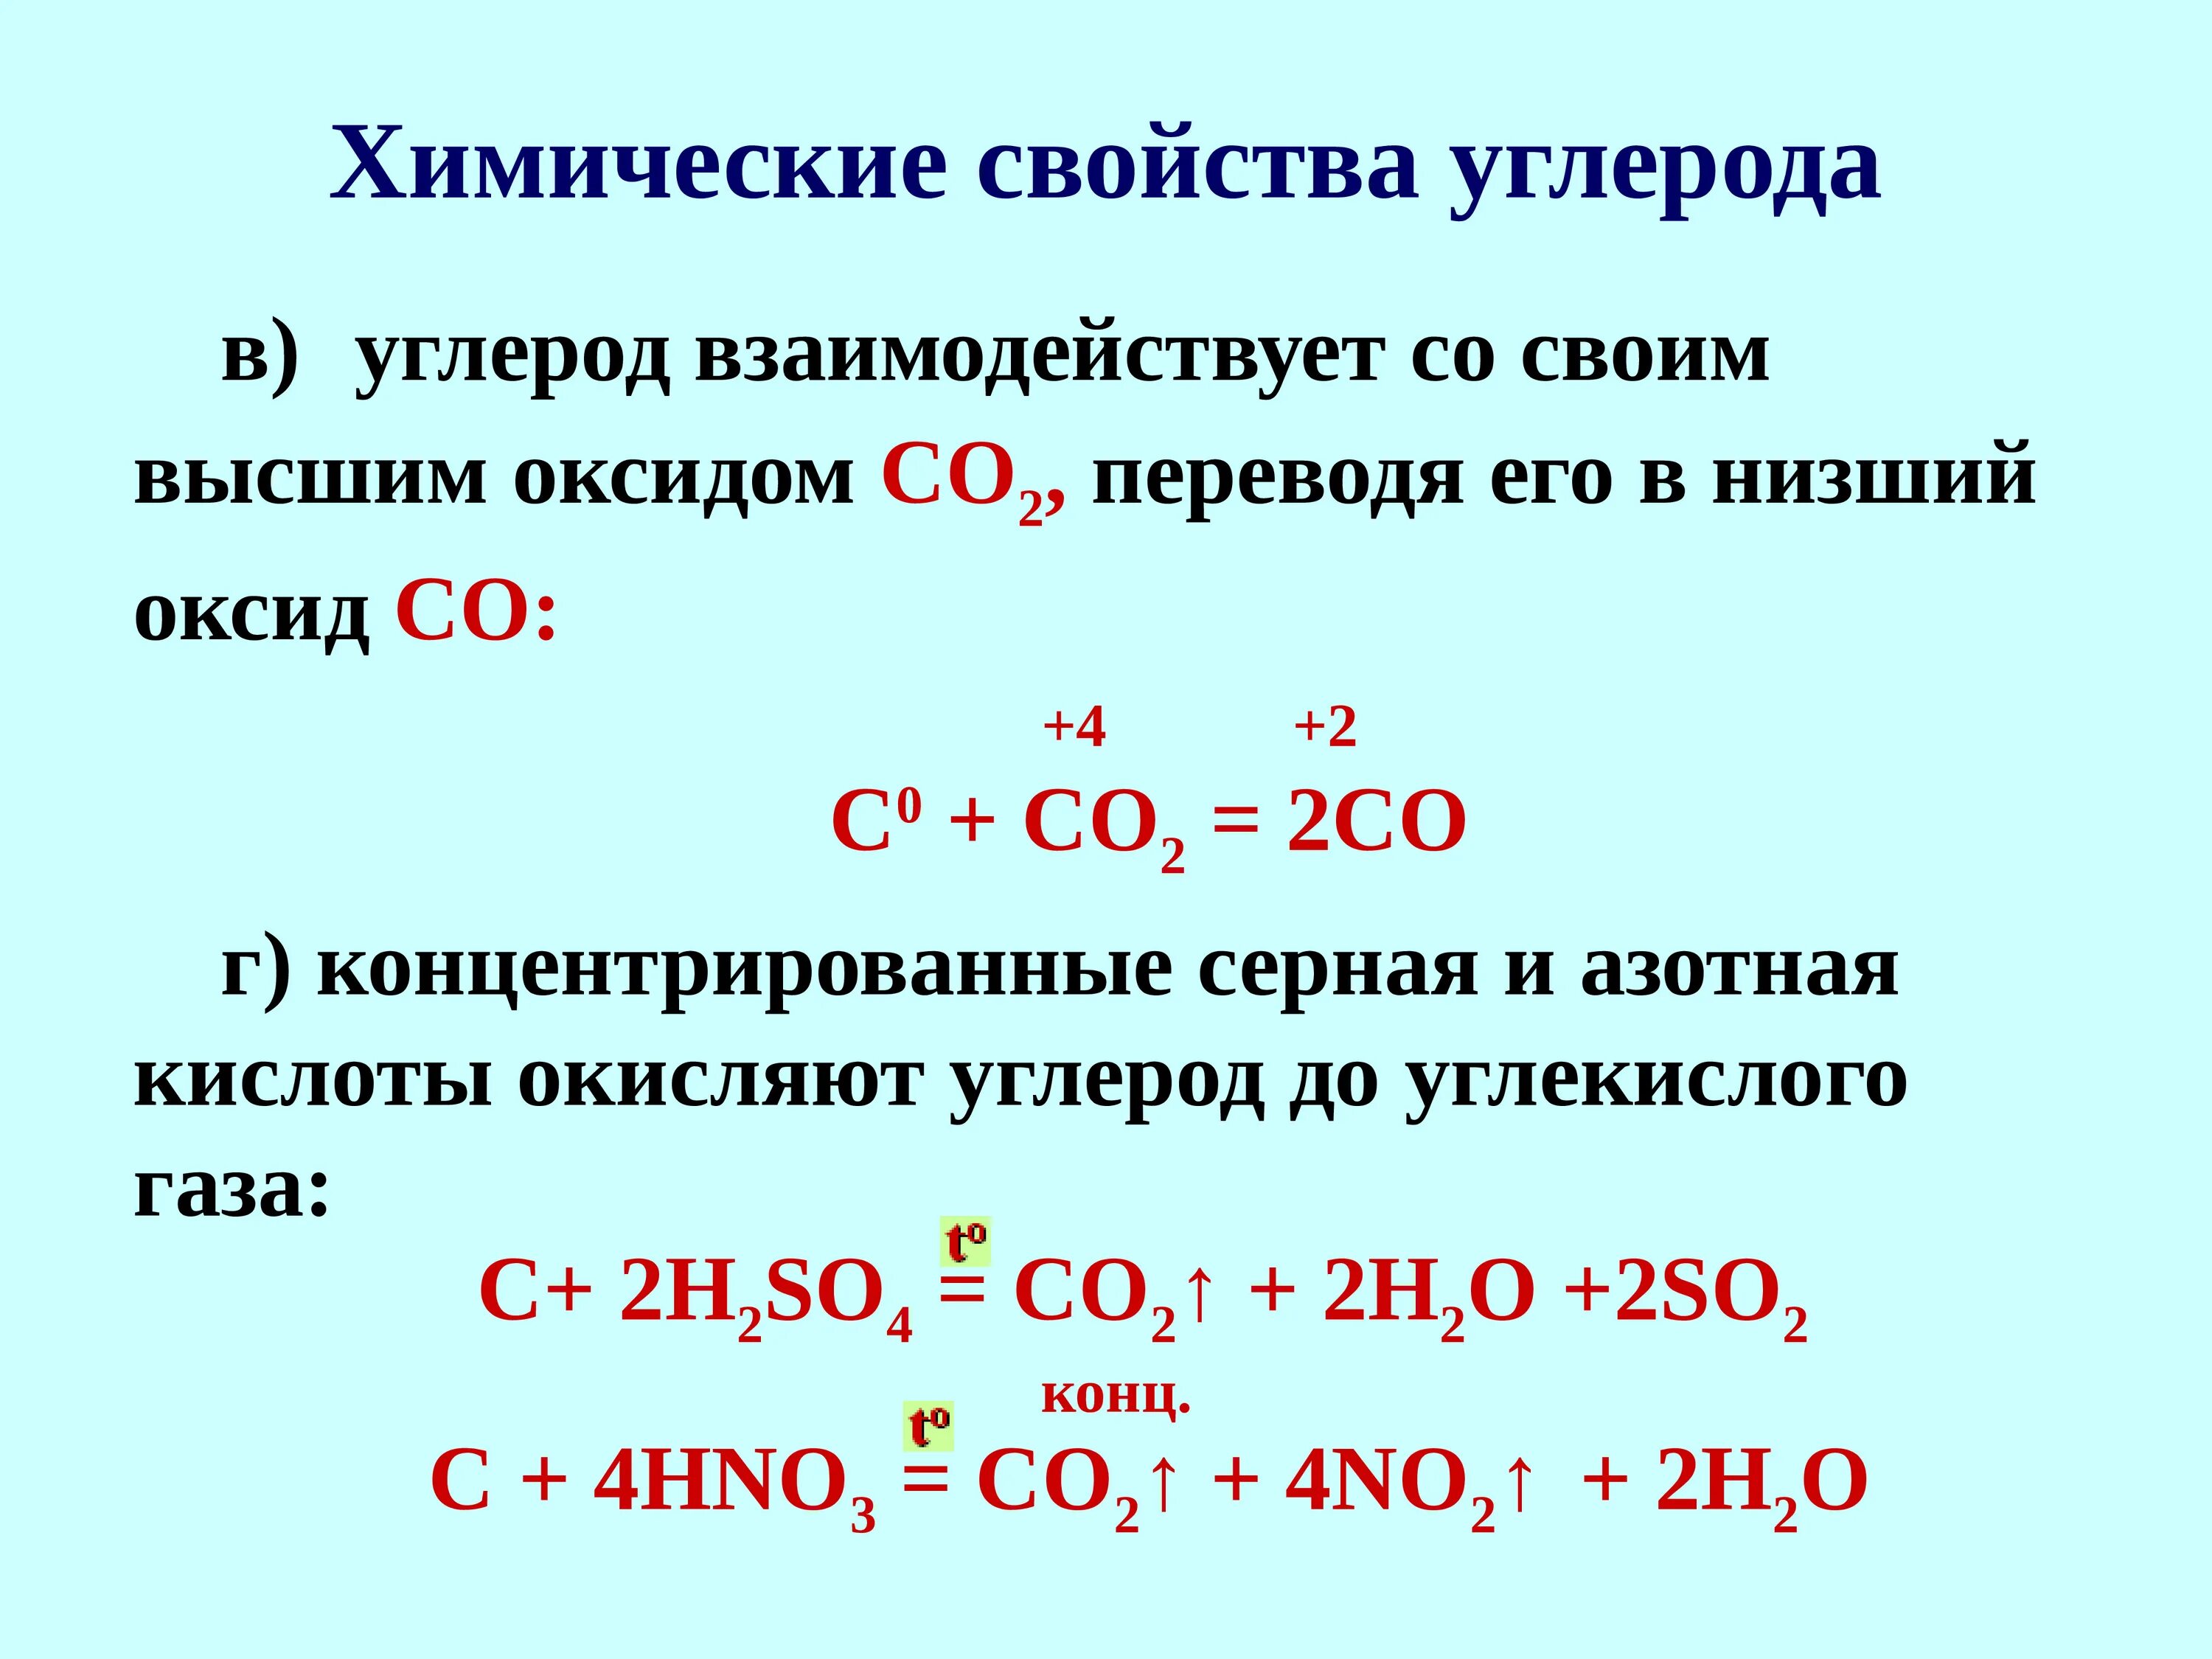 Серная кислота co2 реакция. Углерод плюс азотная концентрированная. Углерод плюс концентрированная серной кислота. Взаимодействие углерода с концентрированной серной кислотой. Углерод взаимодействует с кислотами.